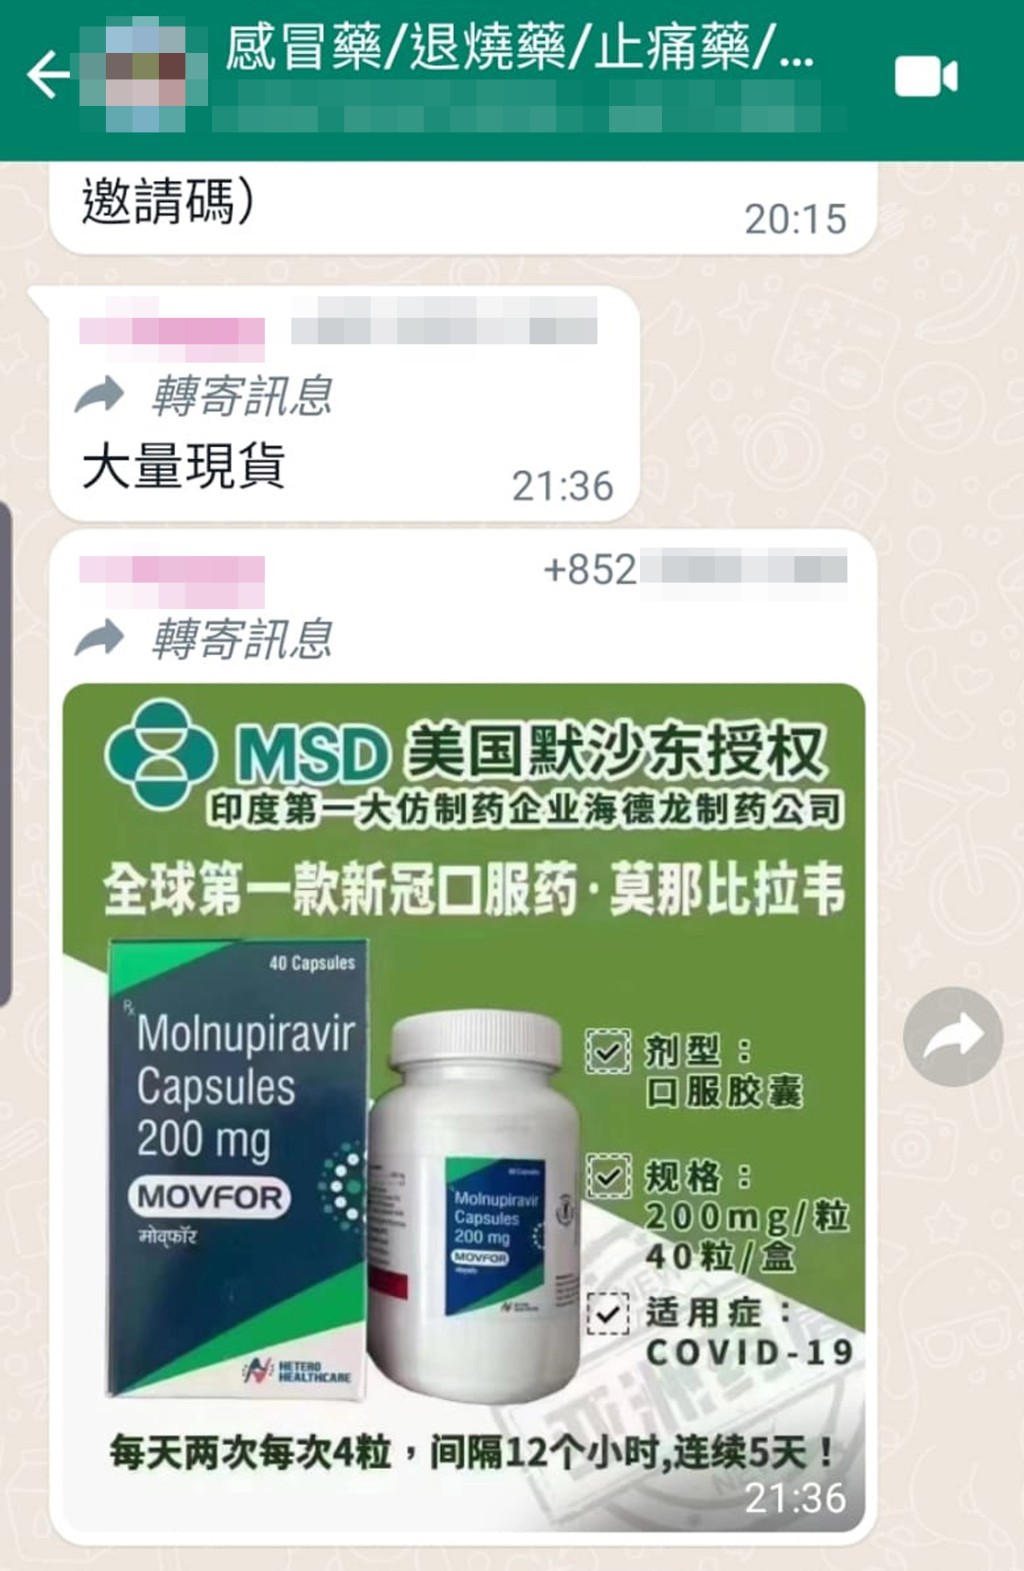 有人在Whatsapp群组叫卖印度版「Molnupiravir」新冠口服药。